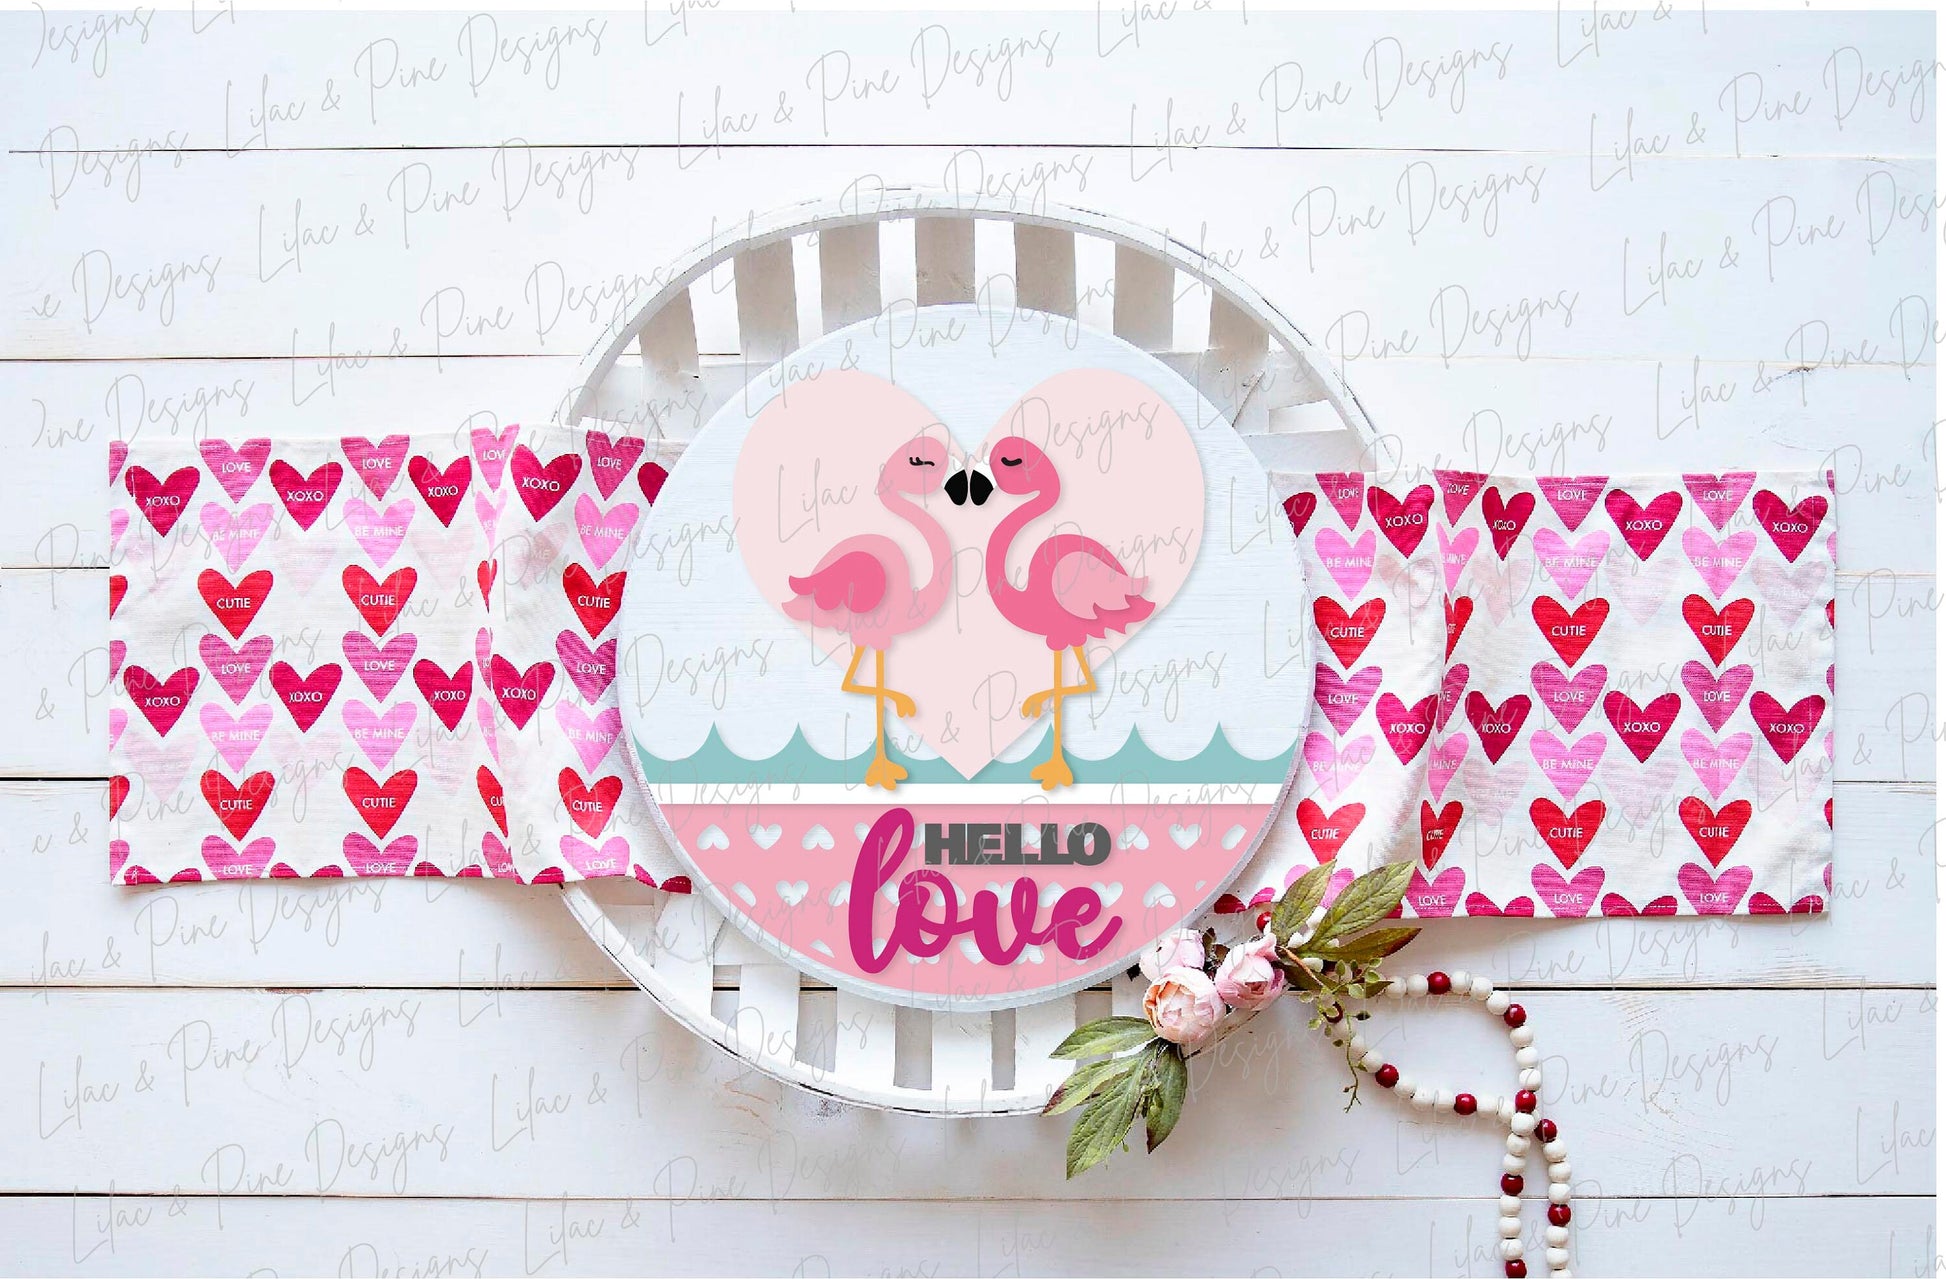 Flamingo door hanger SVG, Valentine round sign, Hello Love Welcome sign, Valentine's Day decor svg, Glowforge SVG, laser cut file